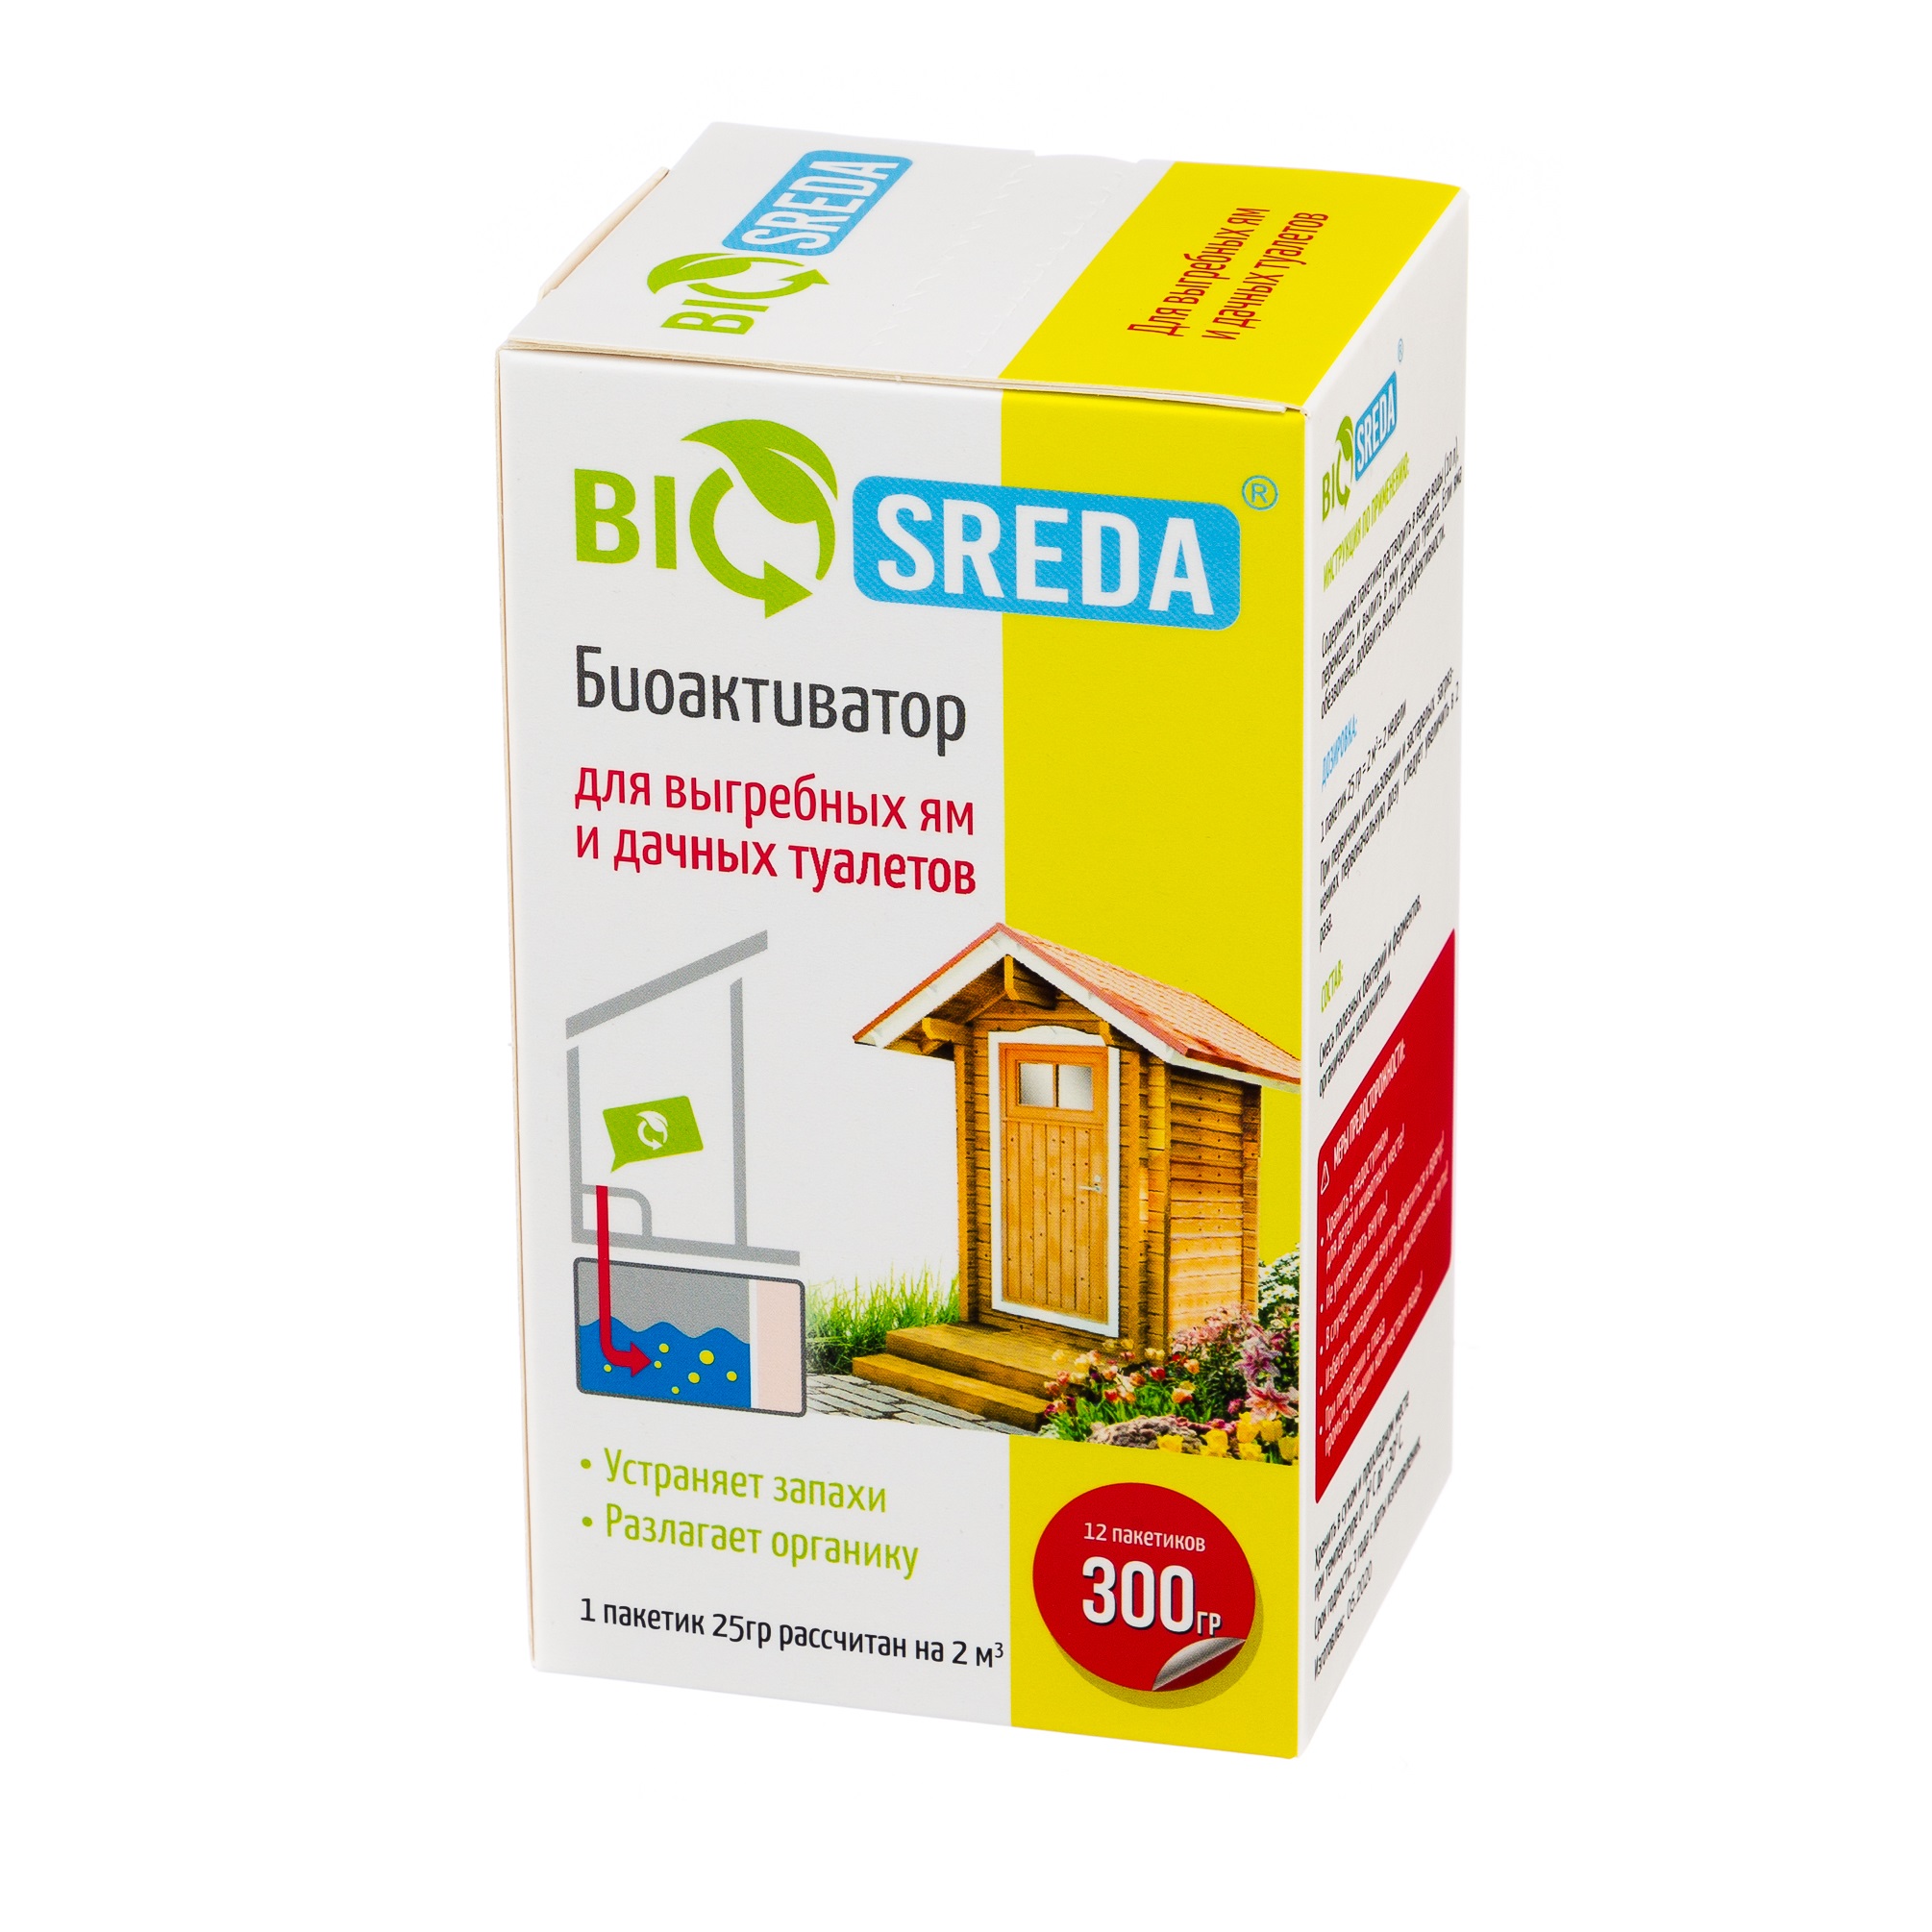 Биоактиватор Biosreda для выгребных ям и дачных туалетов, 300 гр 12 пакетов биоактиватор для дачных туалетов и септиков expel